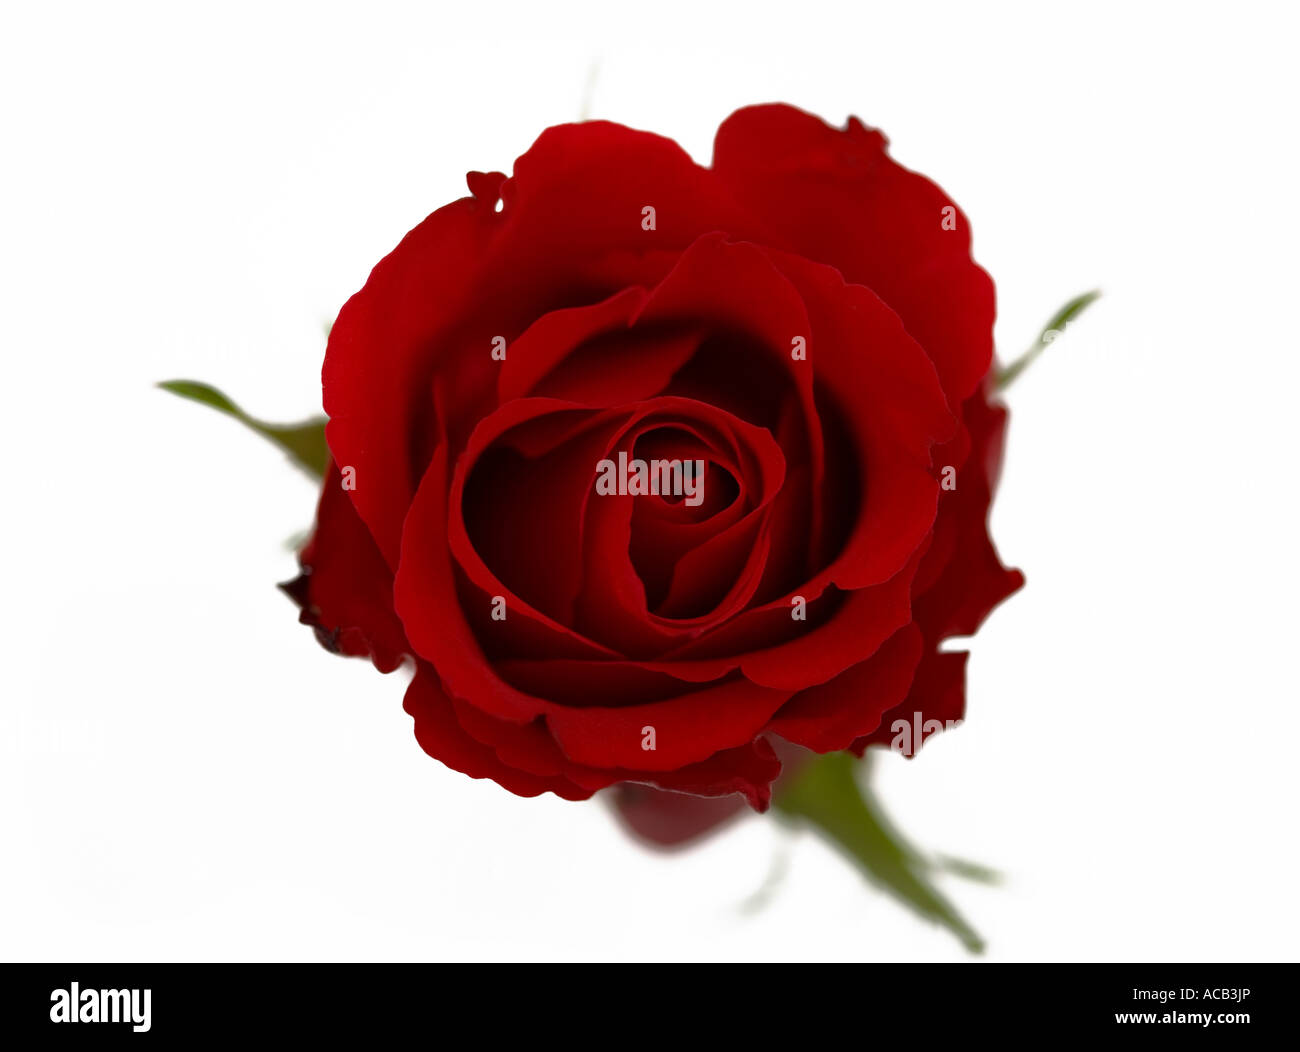 Einzelne rote Rose von oben gegen einen sauberen, weißen Hintergrund erschossen Stockfoto